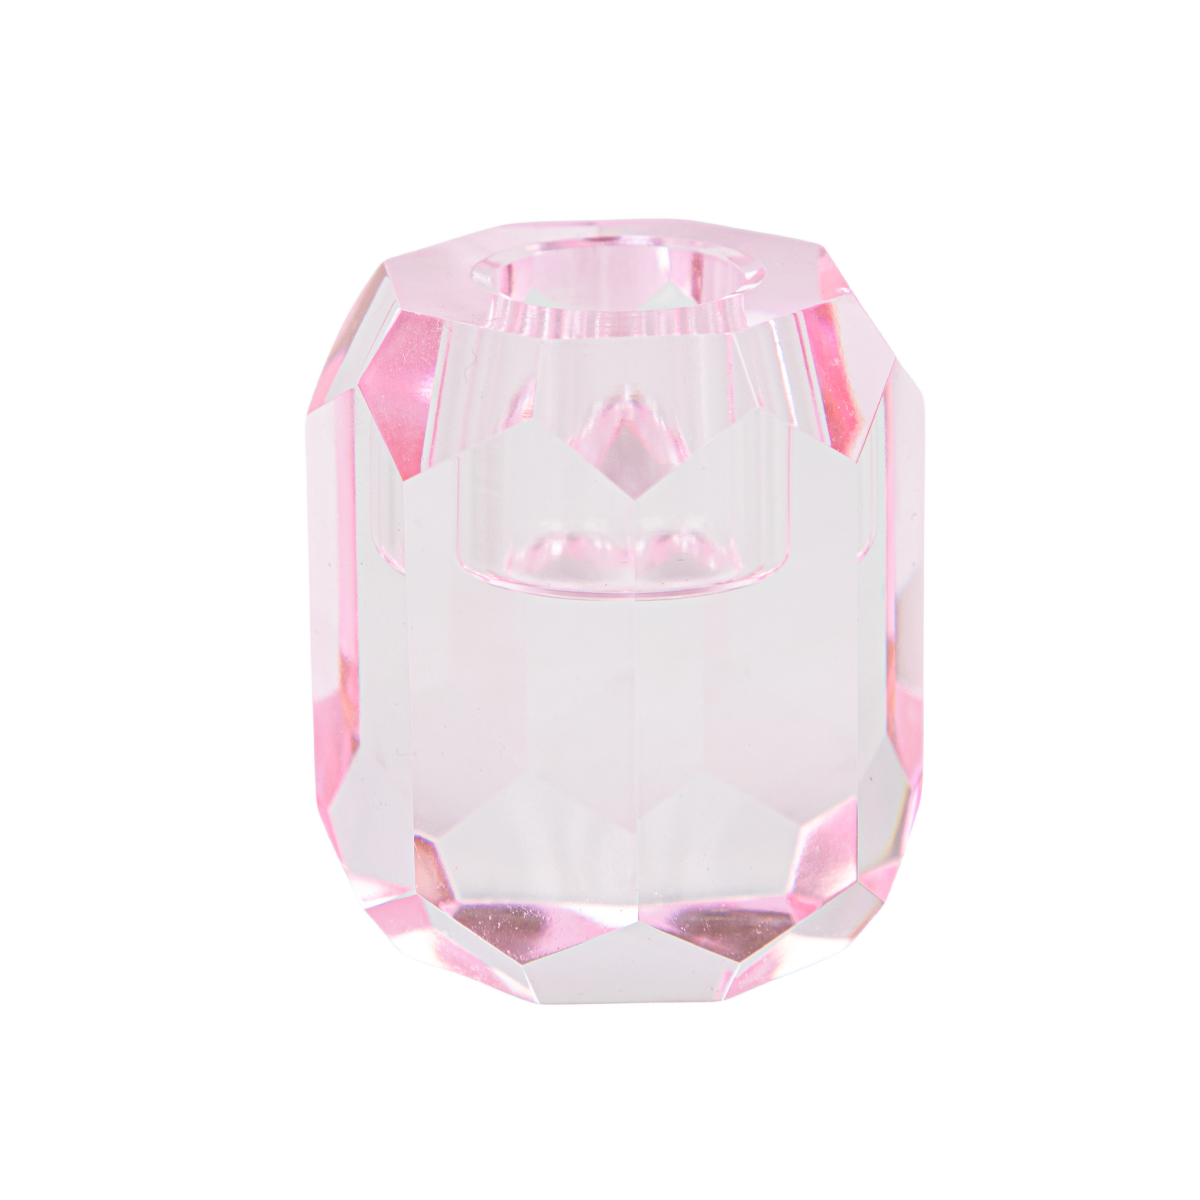 qinge Candlestick Pink Irregular Crystal Candle Holder